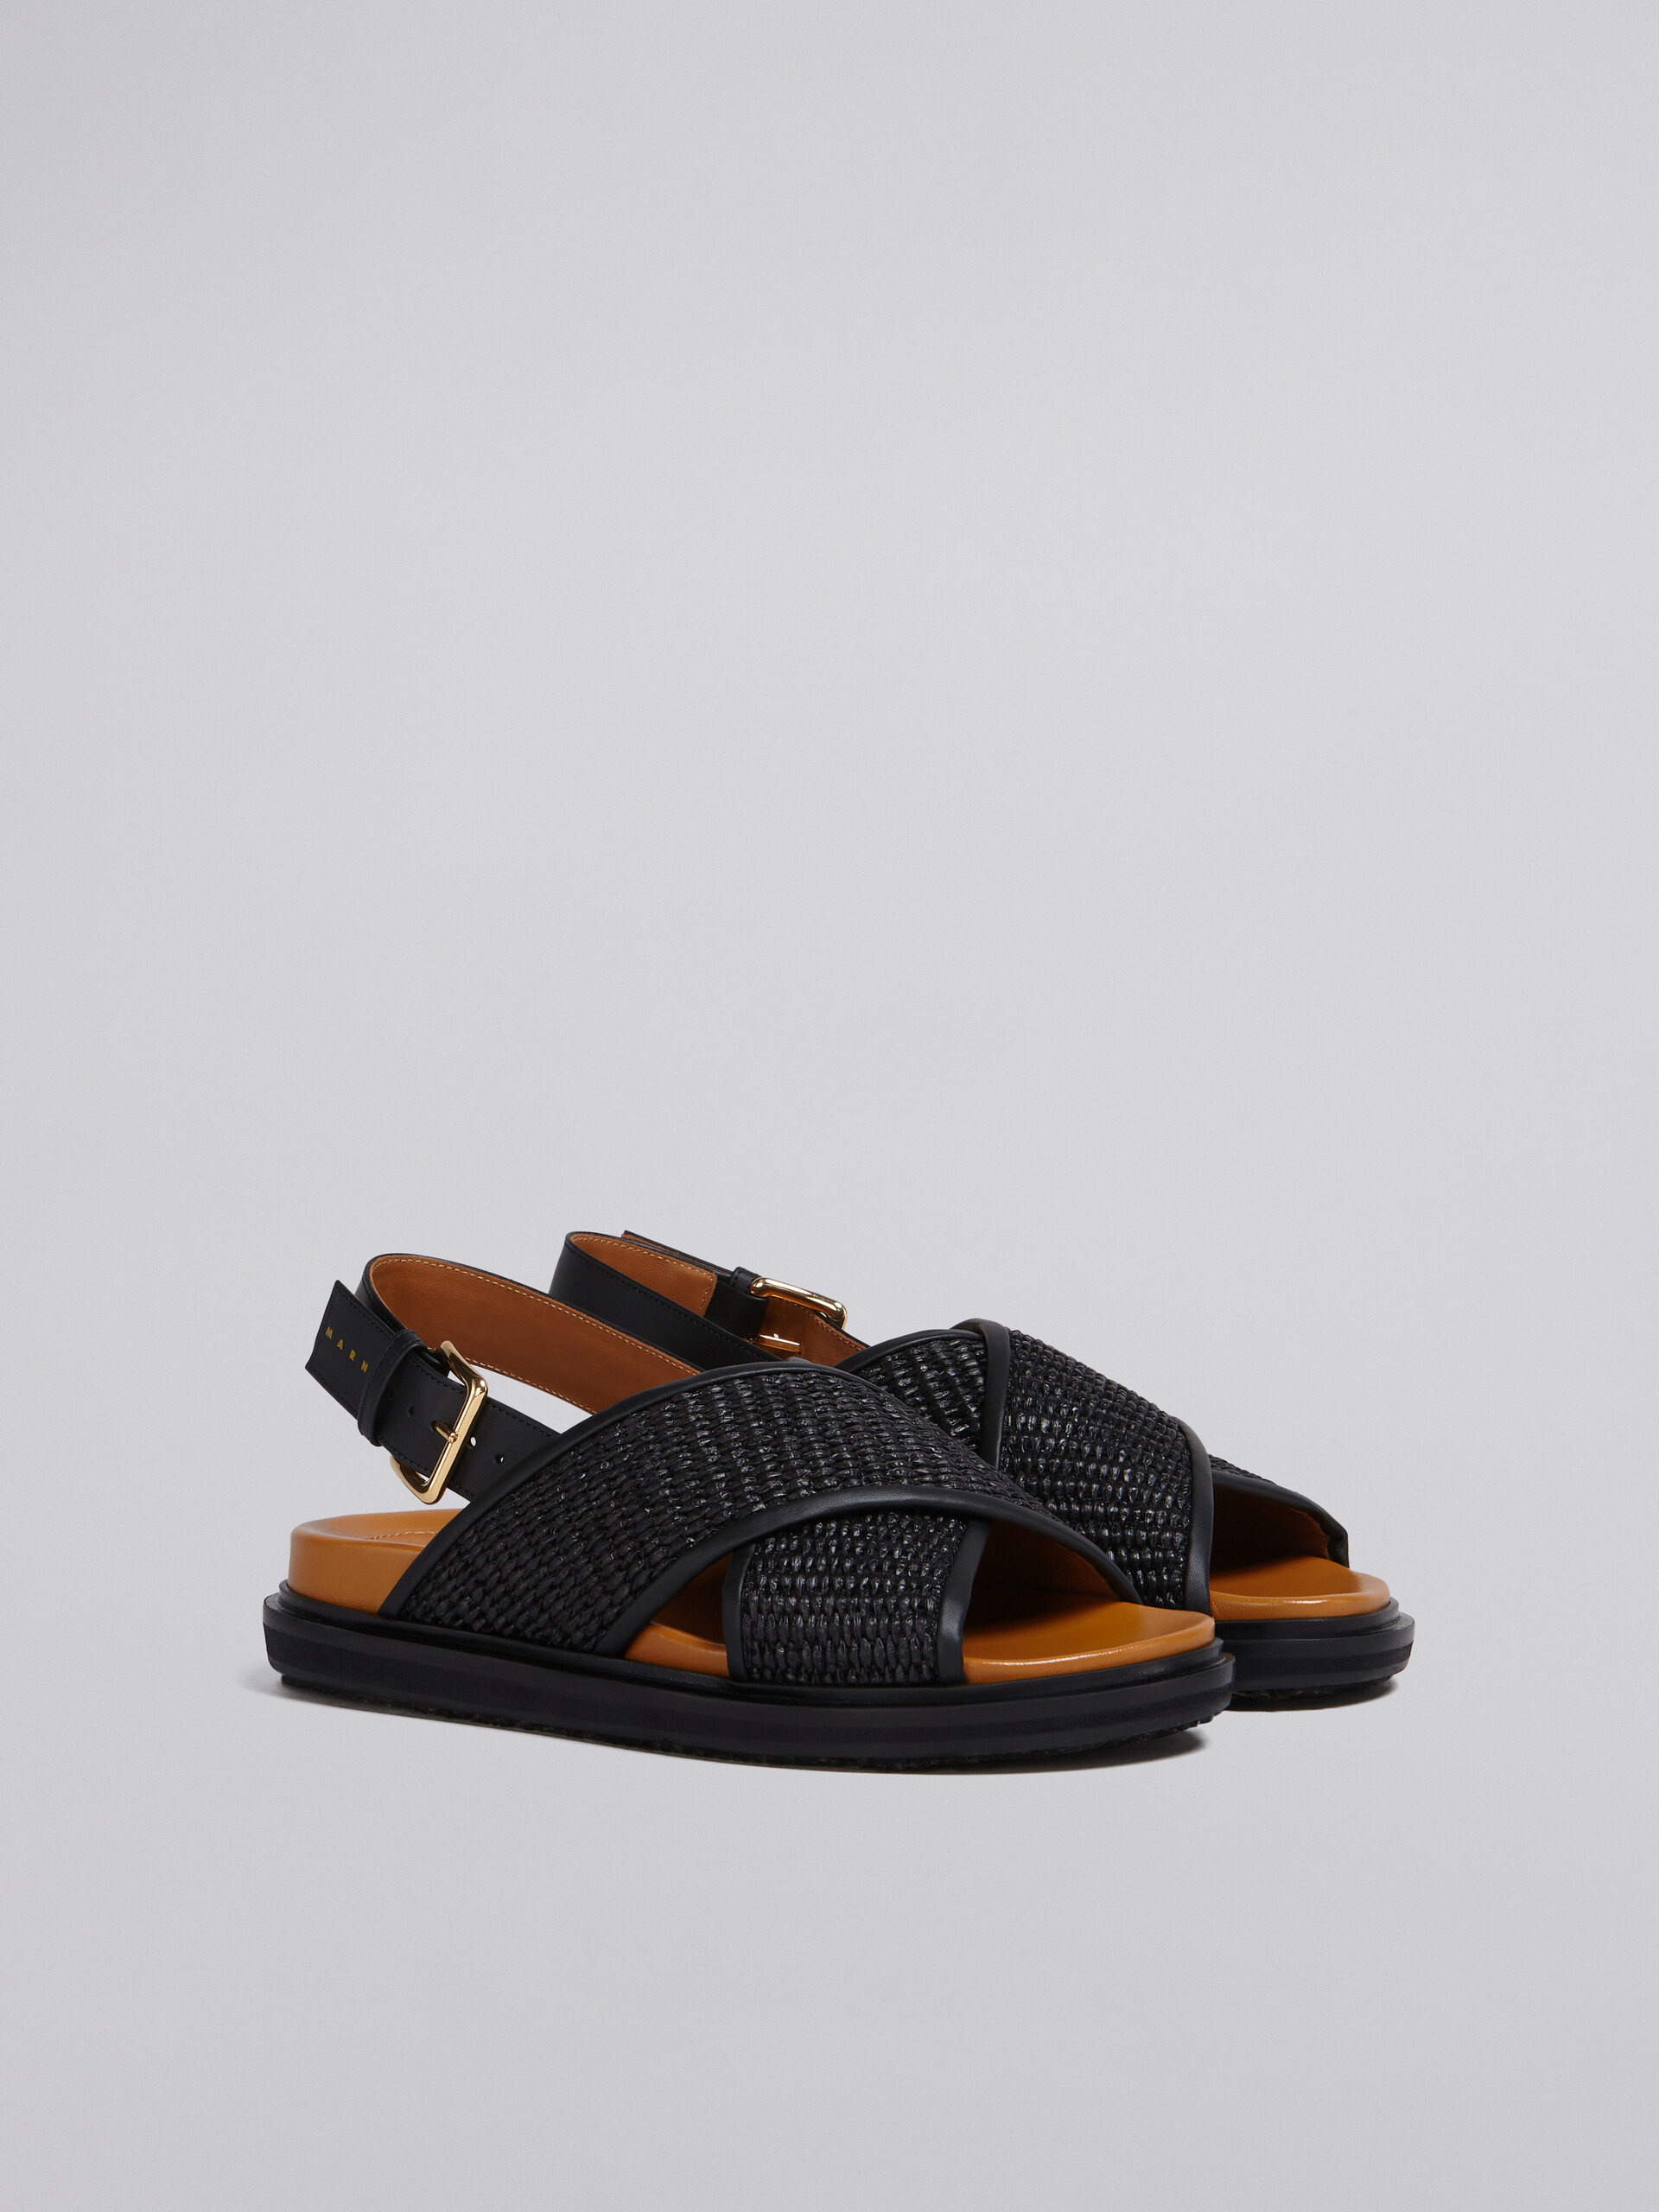 블랙 라피아 및 가죽 퍼스베트 - Sandals - Image 2